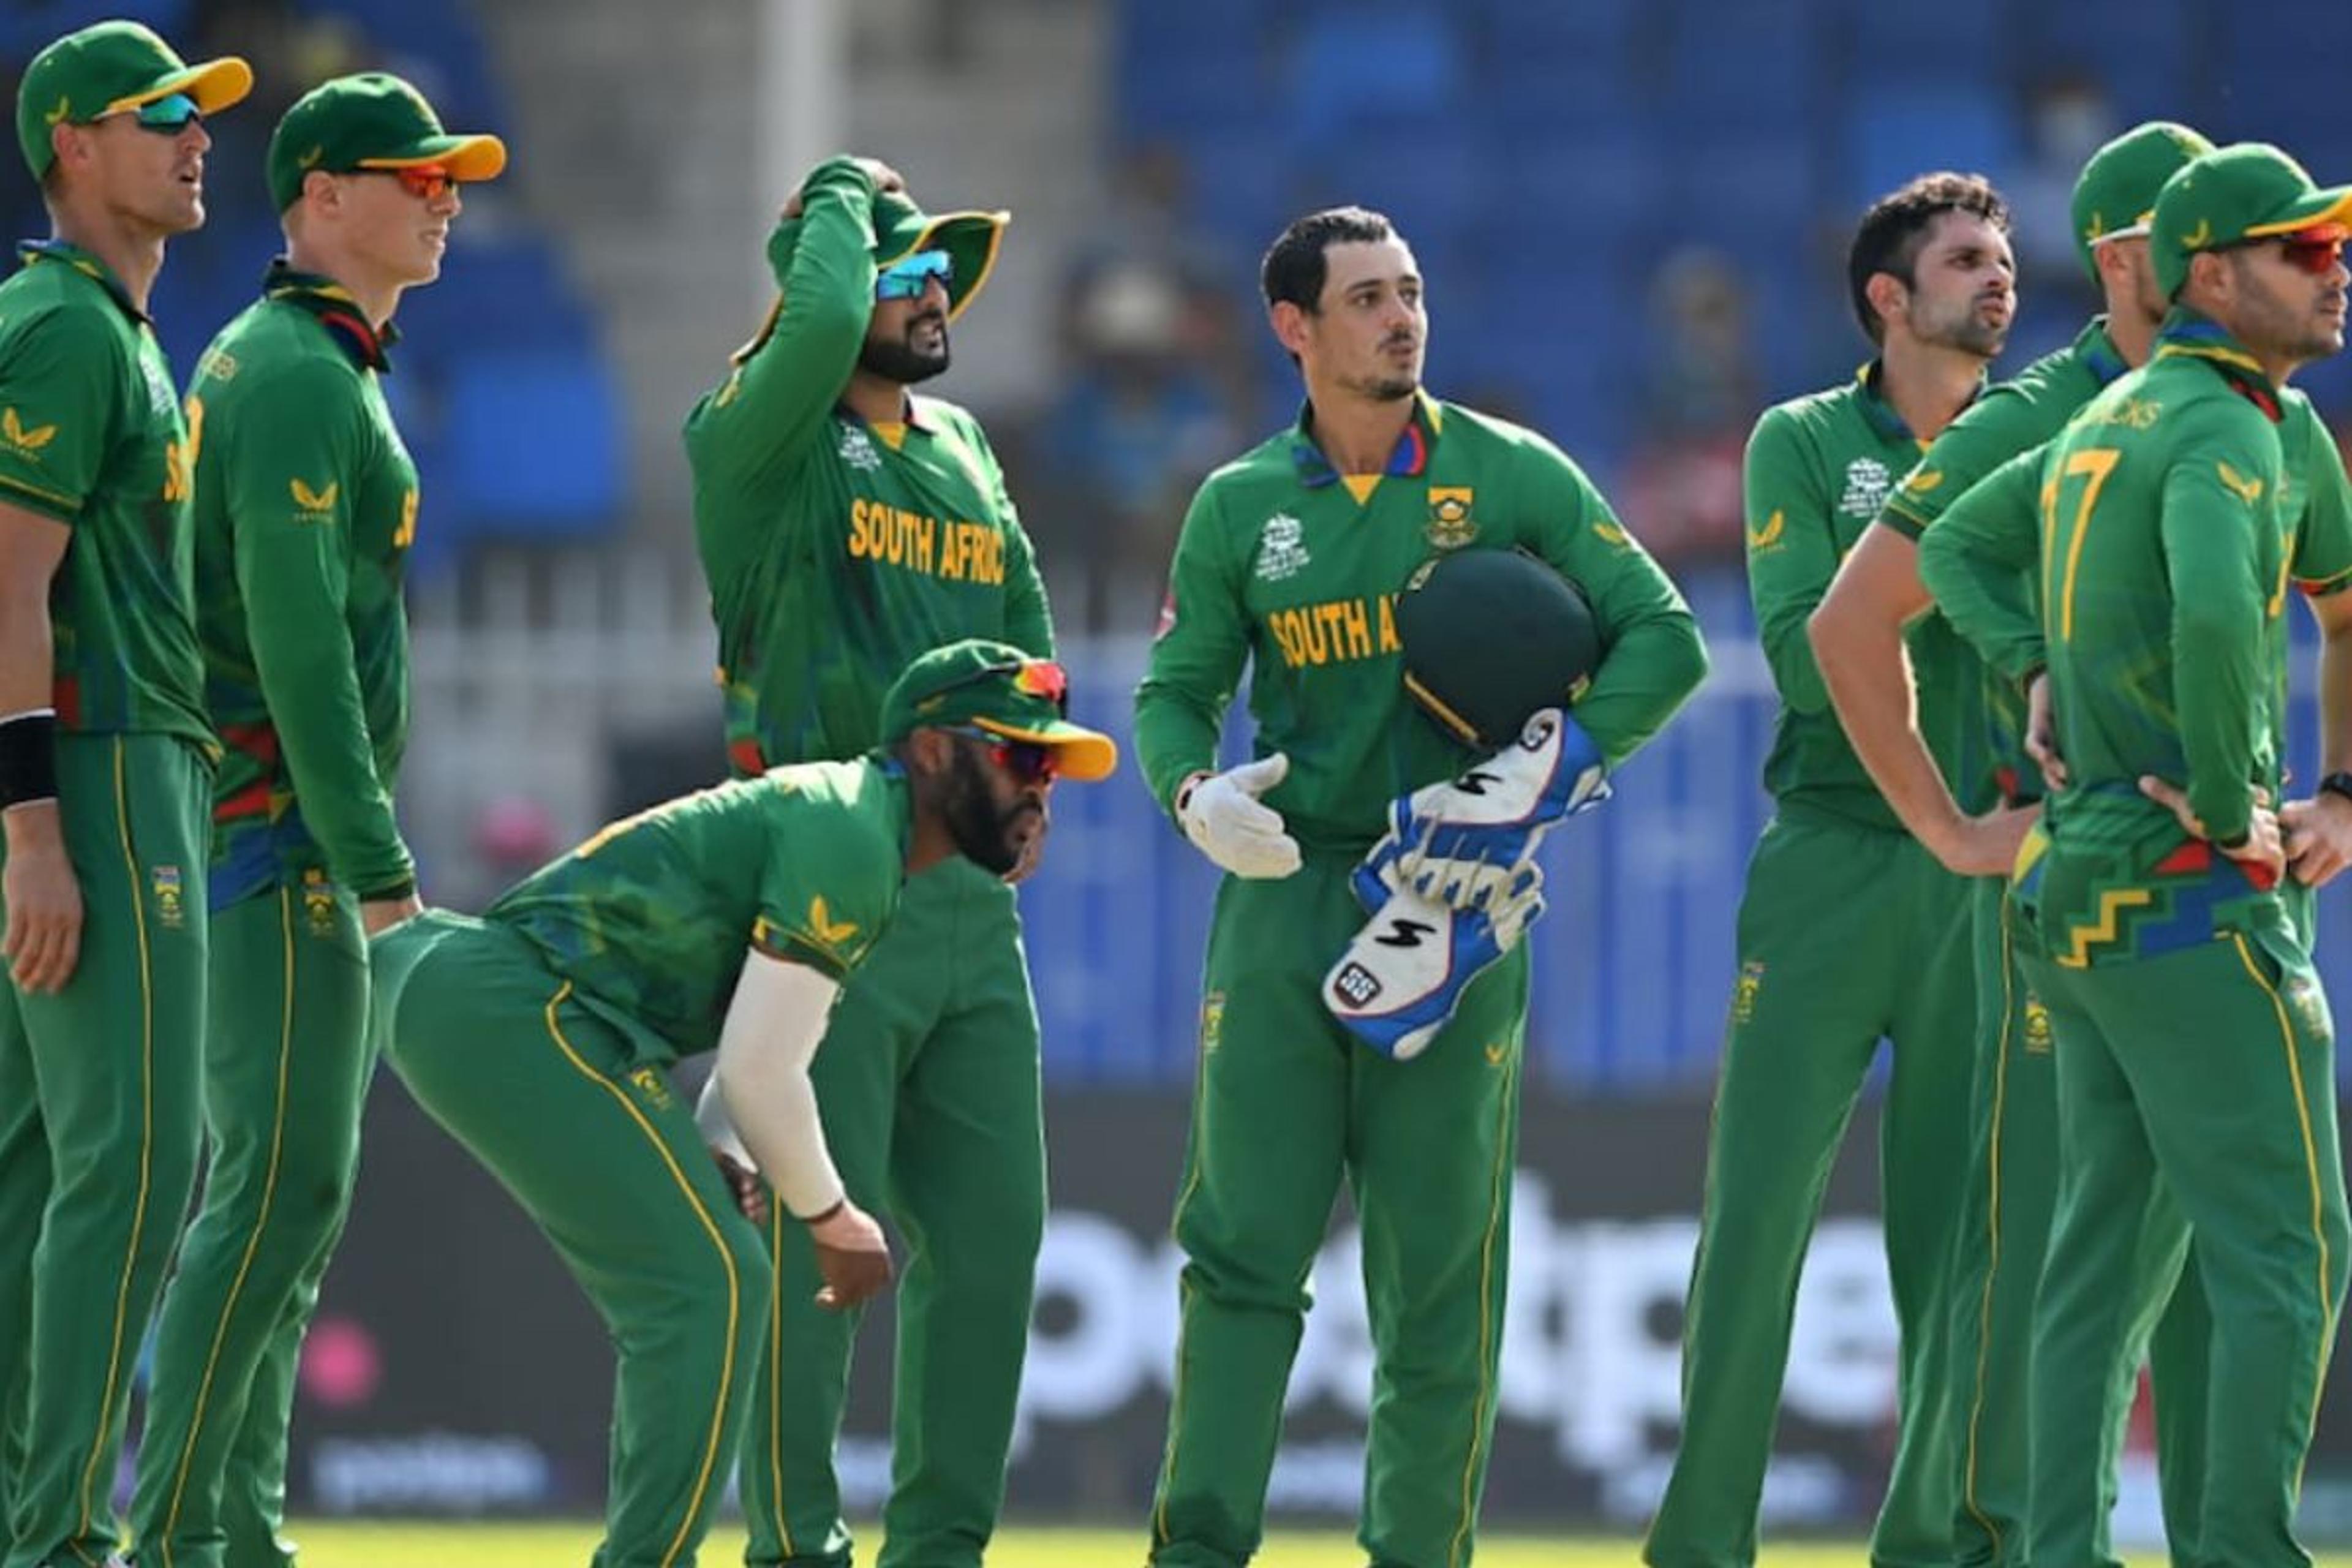 ICC का यह कैसा फरमान, साउथ अफ्रीका को कह दिया वर्ल्ड कप में आपस में टीम बांट कर
खेल लो मैच